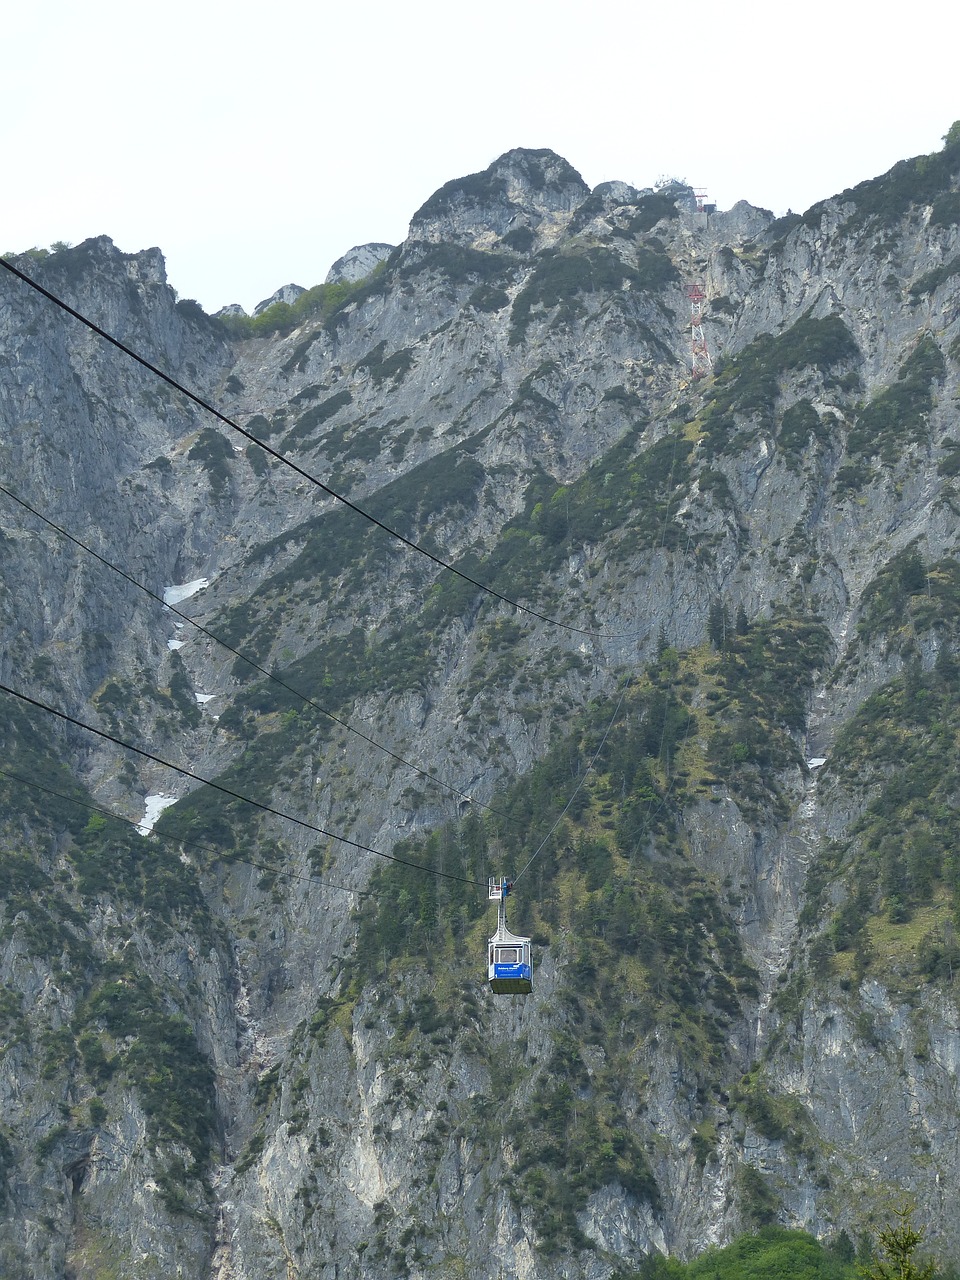 gondola cable car mountain railway free photo